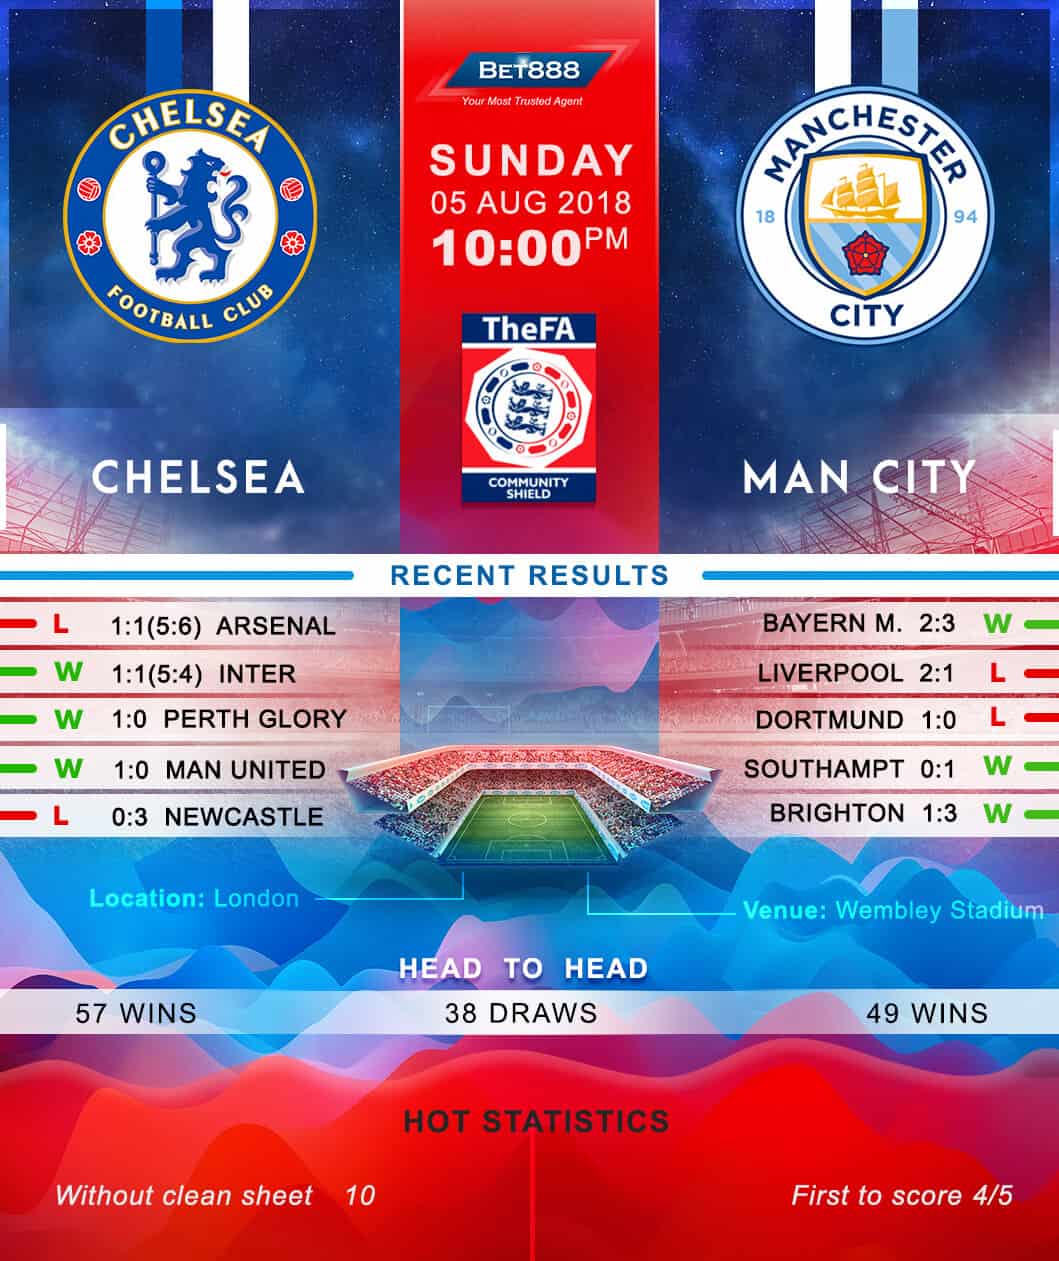 Chelsea vs Manchester City 05/08/18